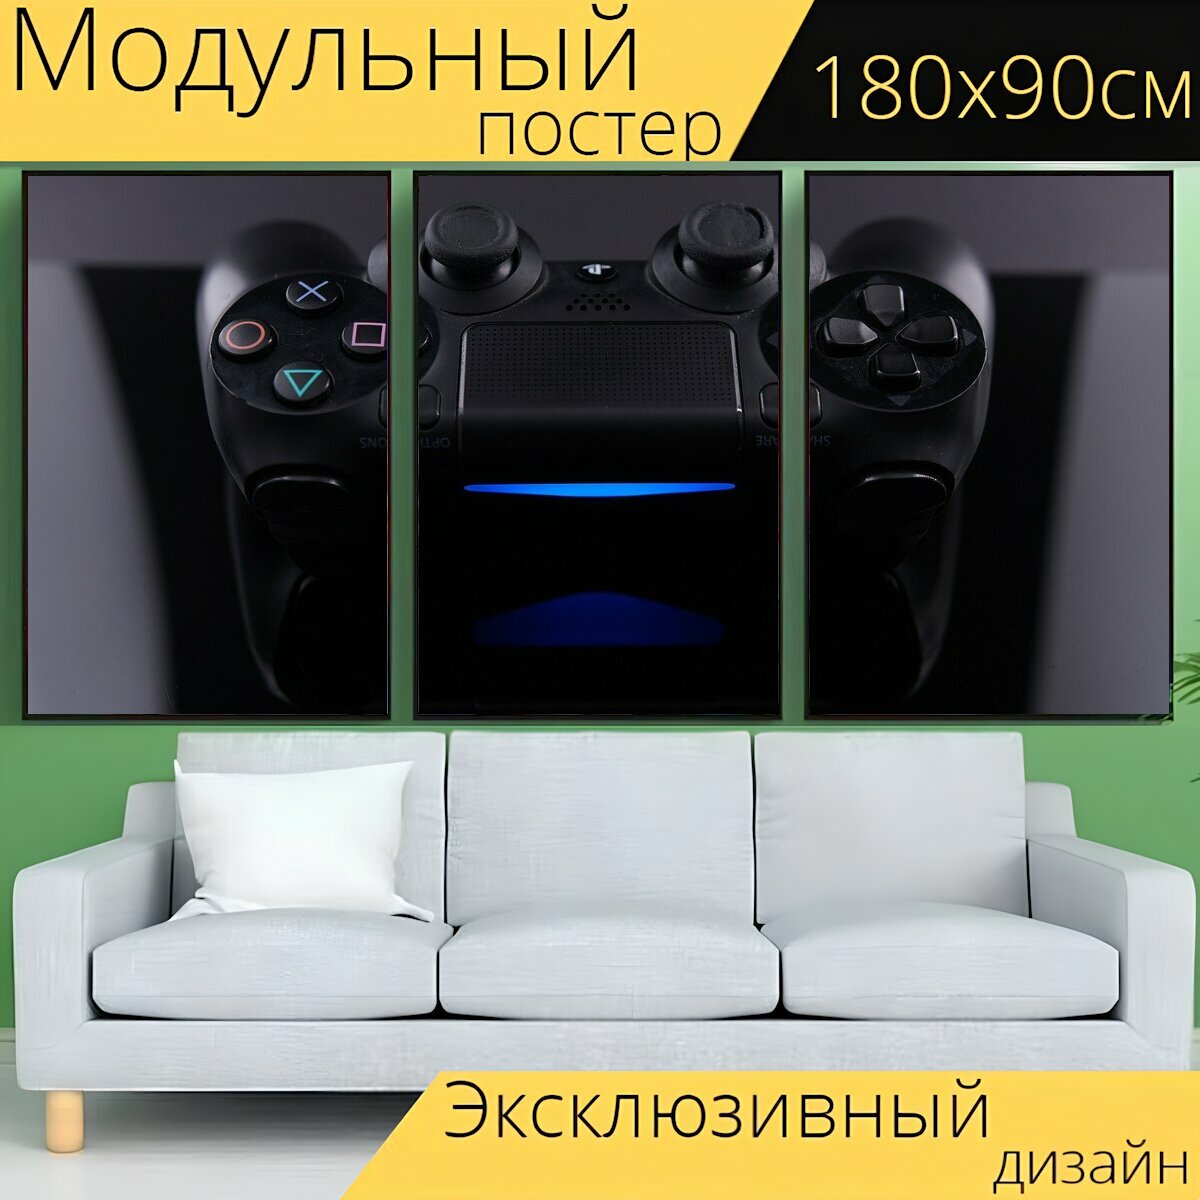 Модульный постер "Игра, контролер, игровая приставка" 180 x 90 см. для интерьера